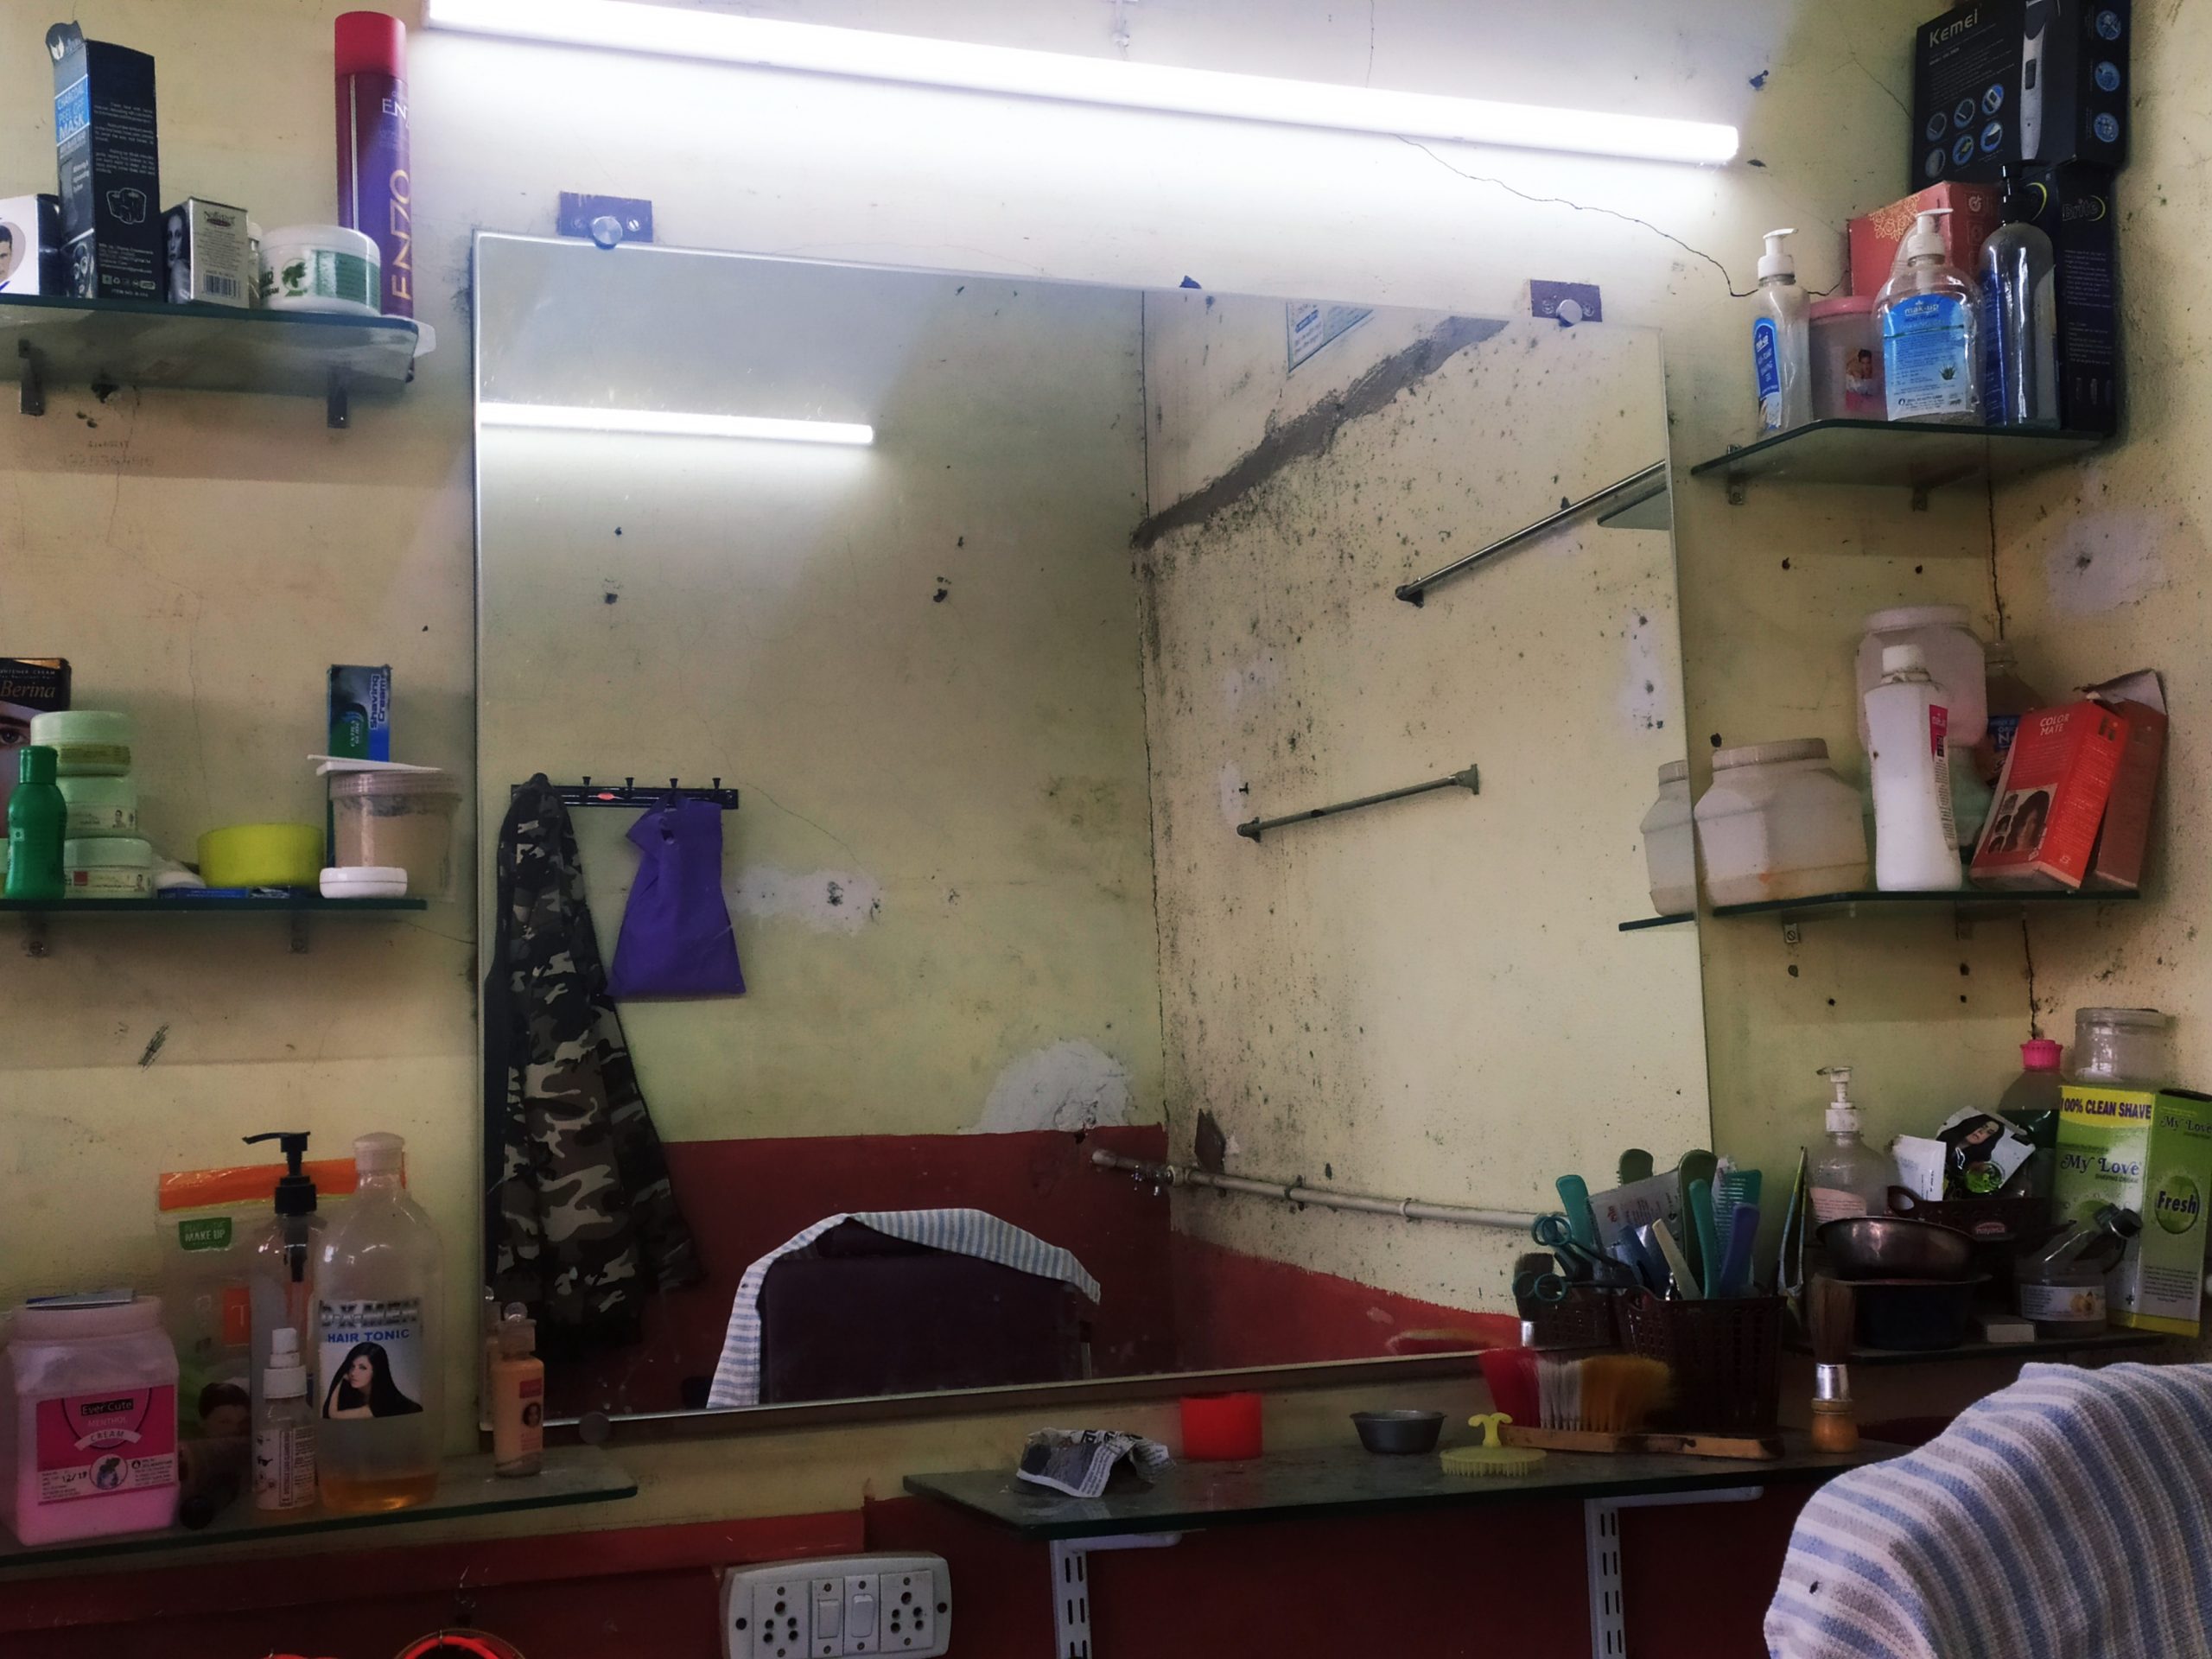 A barber shop